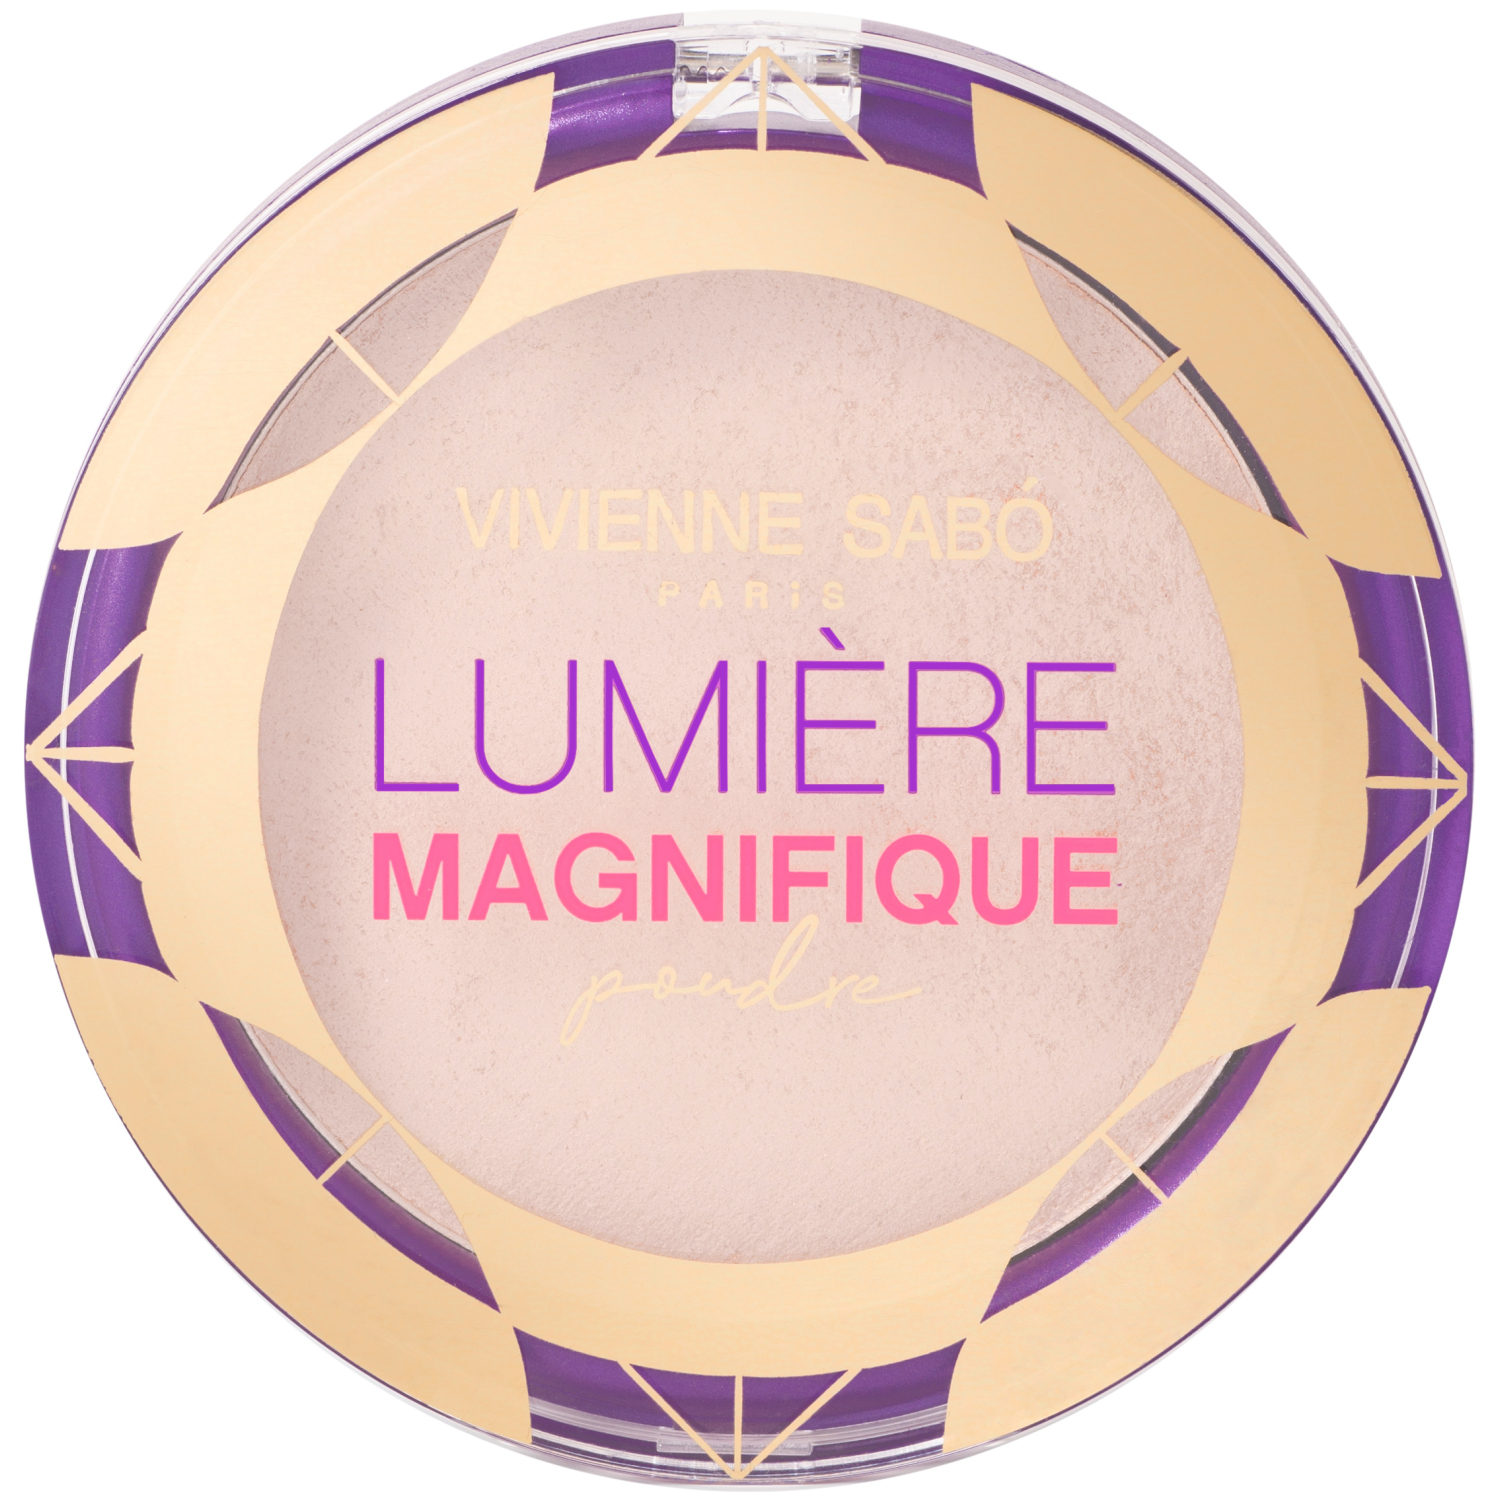 Пудра Vivienne Sabo Lumiere Magnifique, сияющая, бархатистая текстура, эффект мягкого фокуса, тон 01, светло-бежевый, 6гр. кисть косметическая 1 для тональной основы синтетический ворс